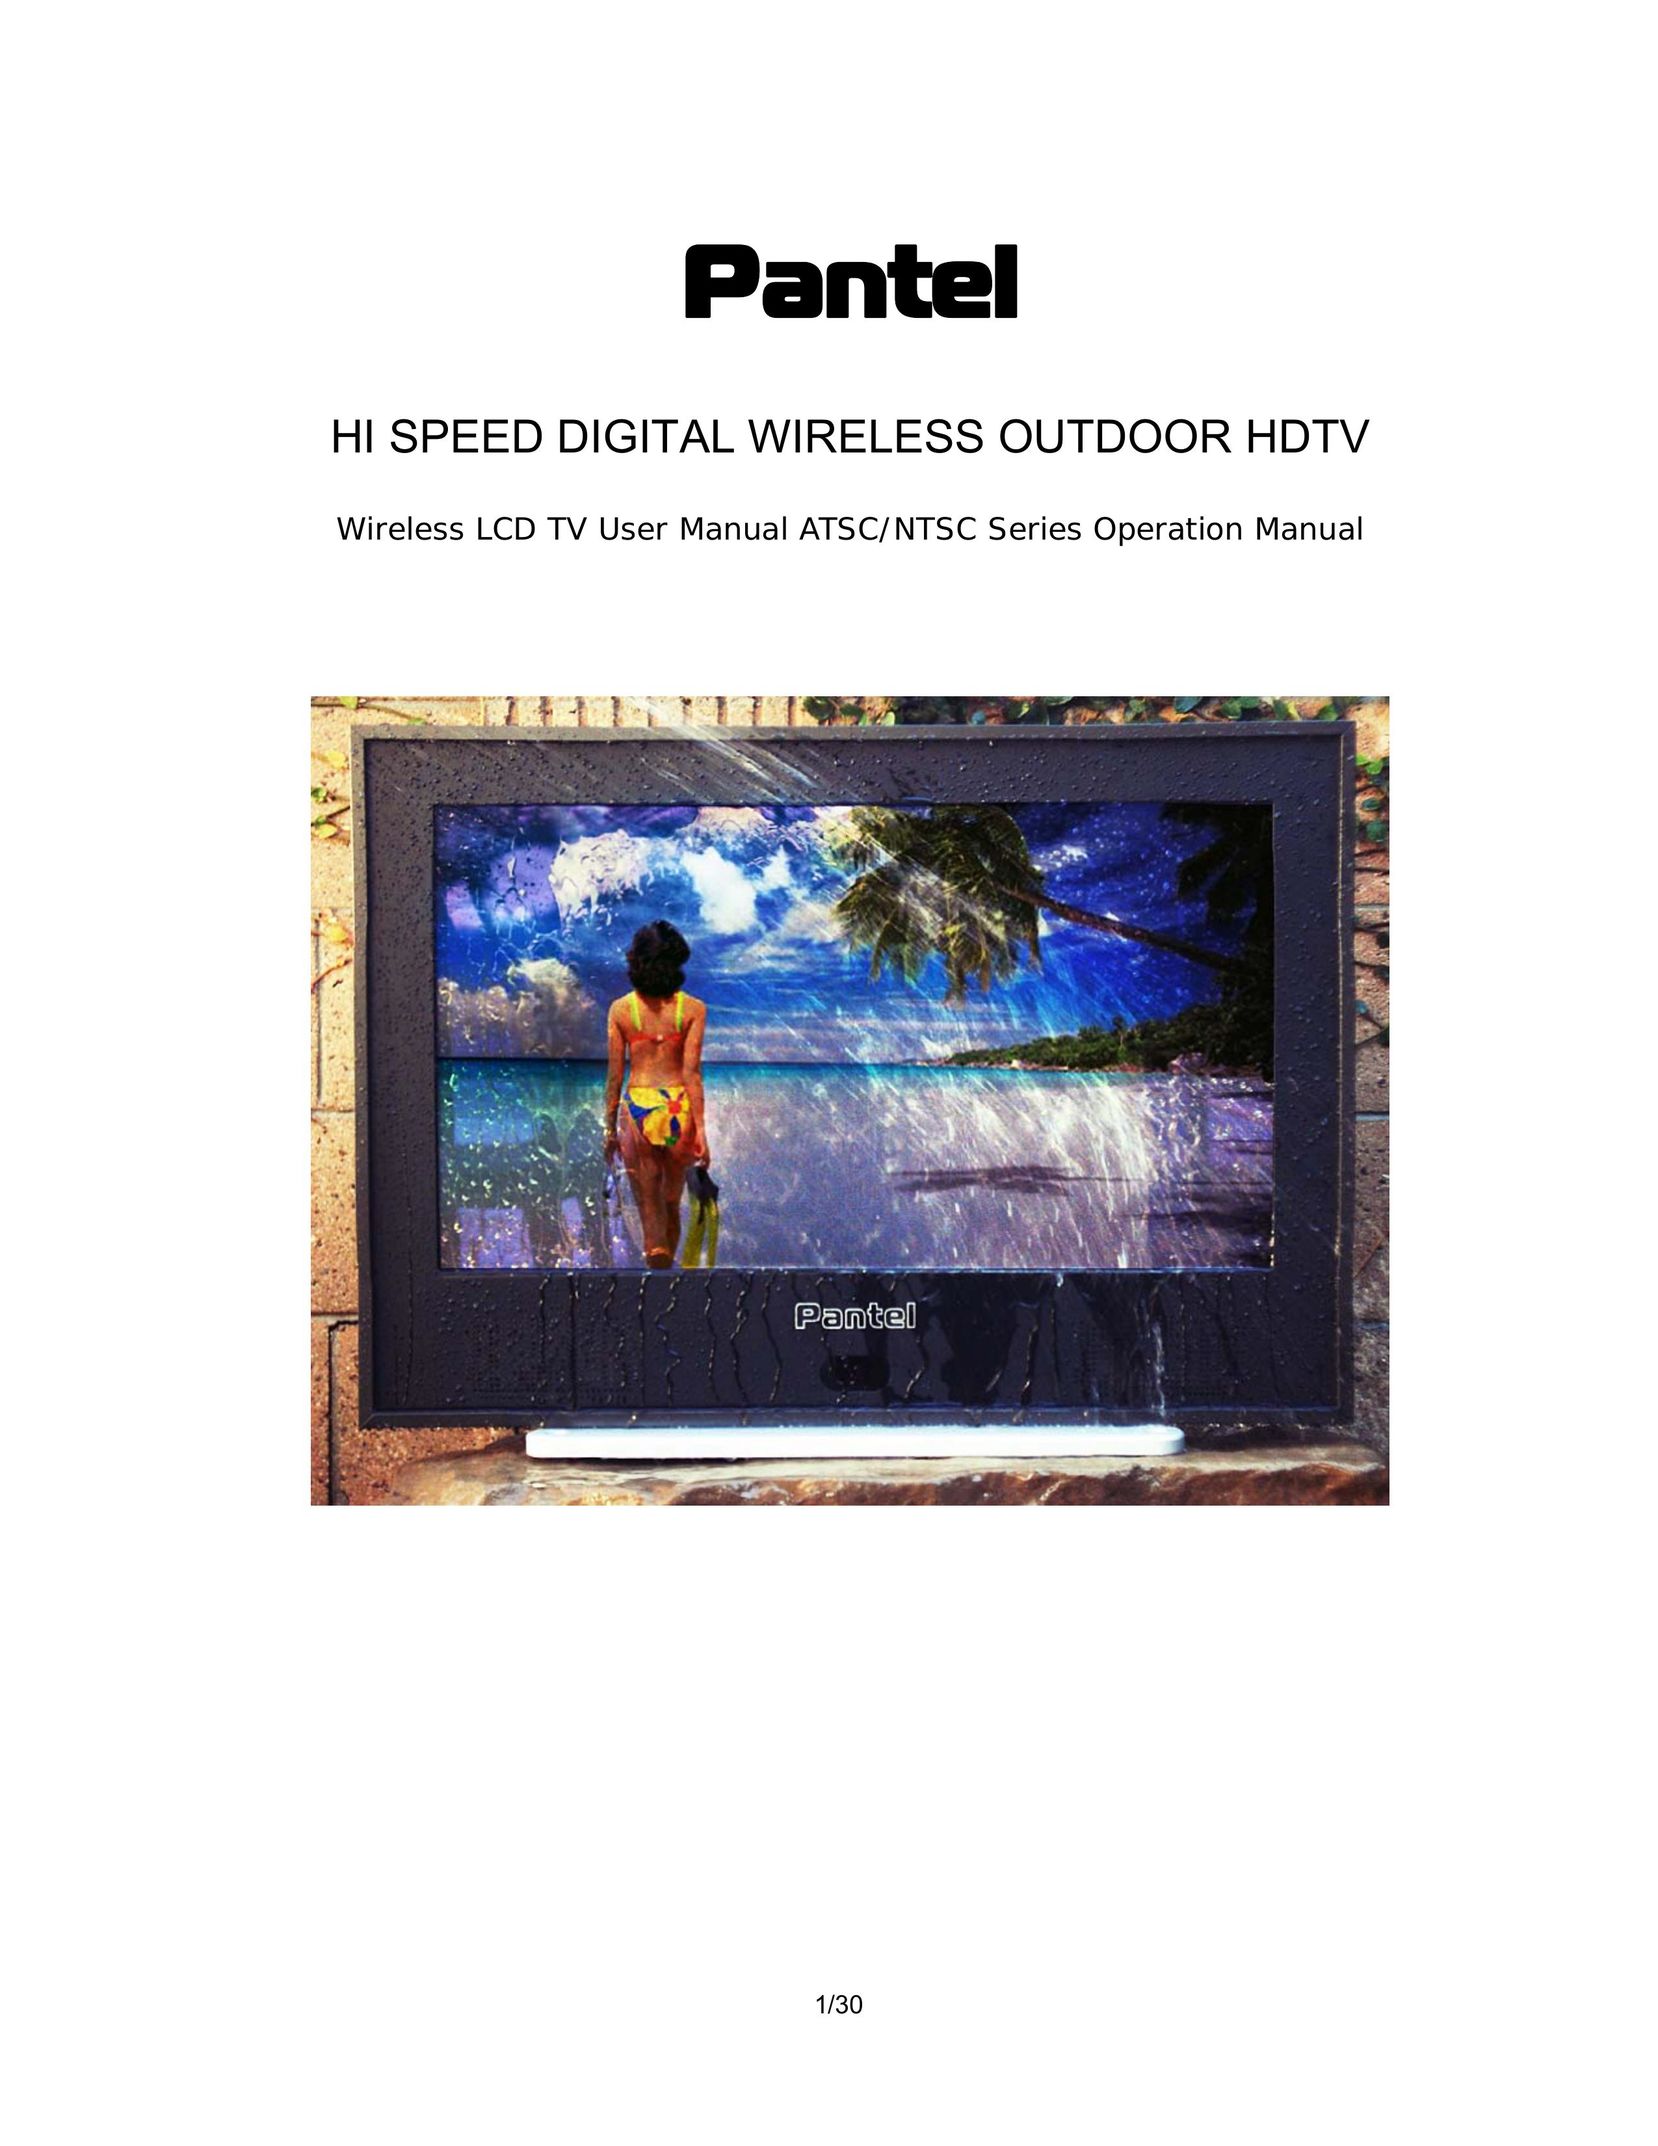 Pantel PAN320 Flat Panel Television User Manual